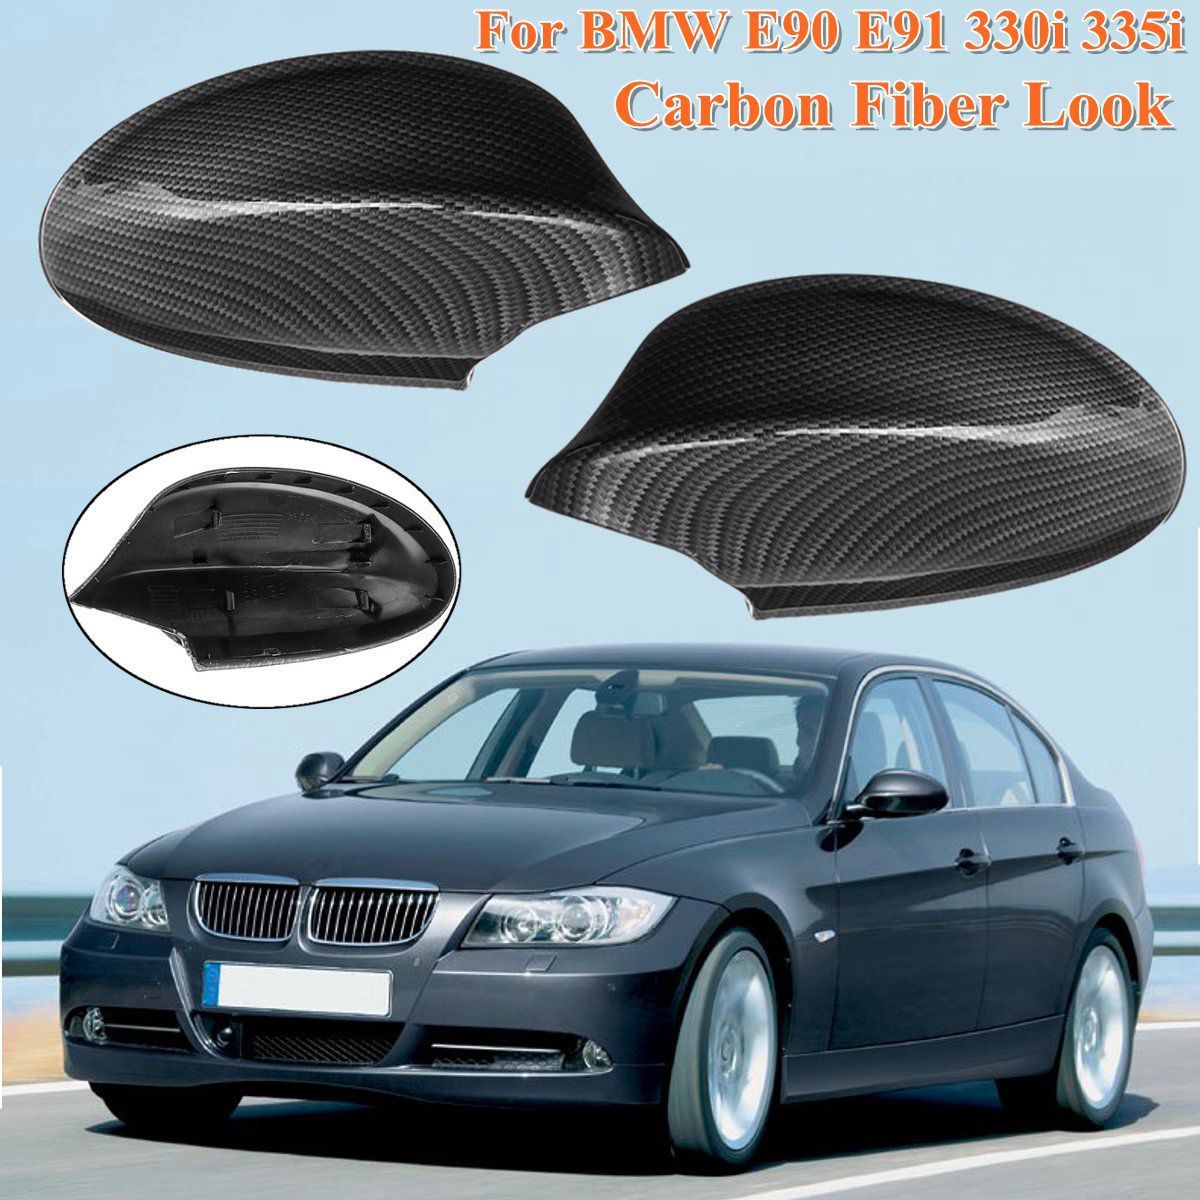 Car-Rear-View-Side-Mirror-Cover-Auto-Reverse-Fit-for-BMW-E90-E90-E91-330i-335i-Pre-LCI-2005-2008-1356478